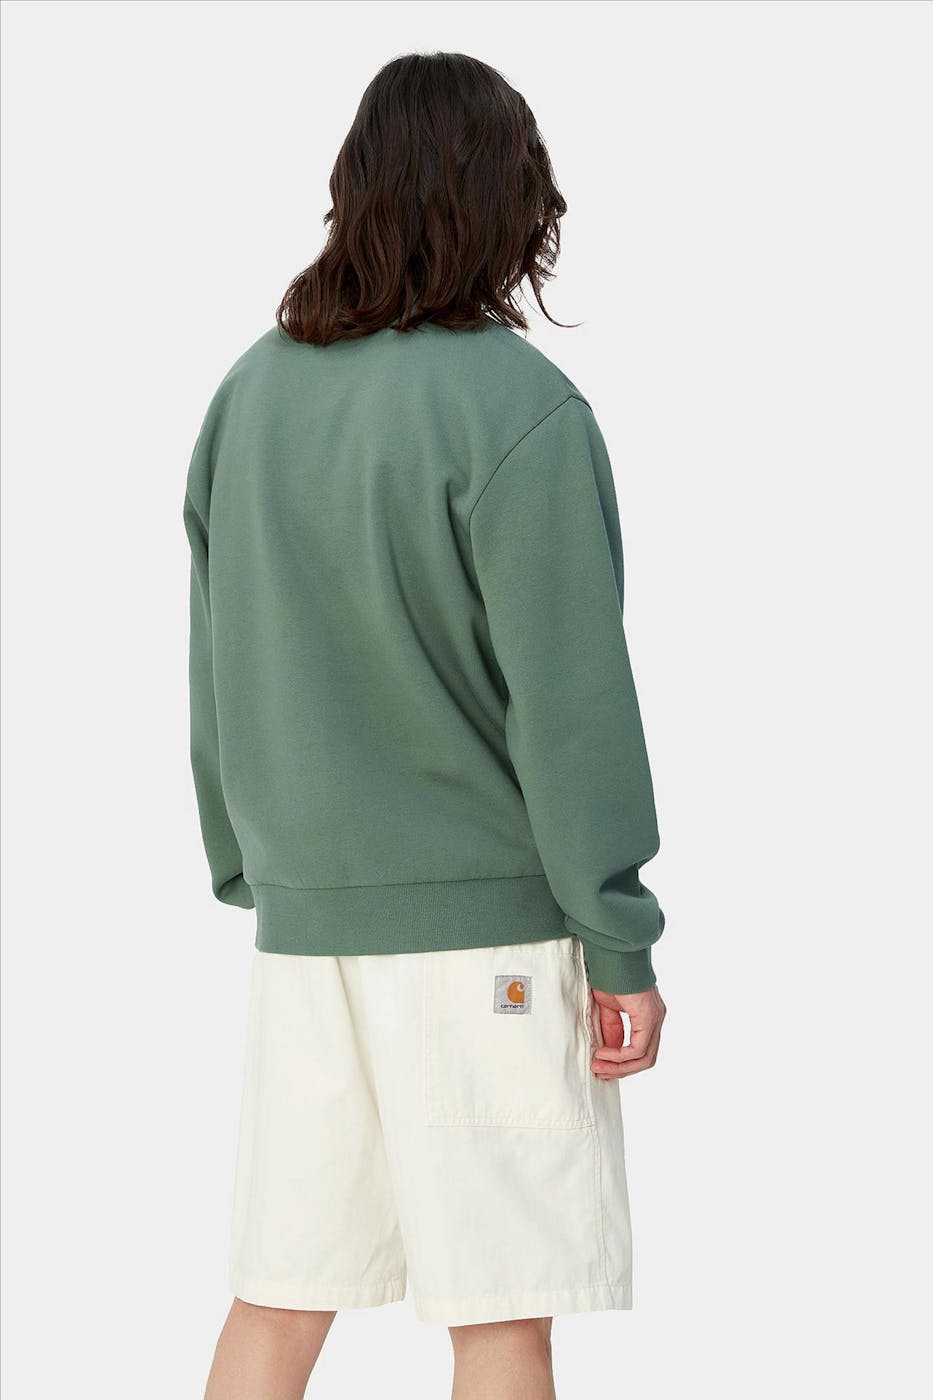 Carhartt WIP - Groene Script Embroidery sweater